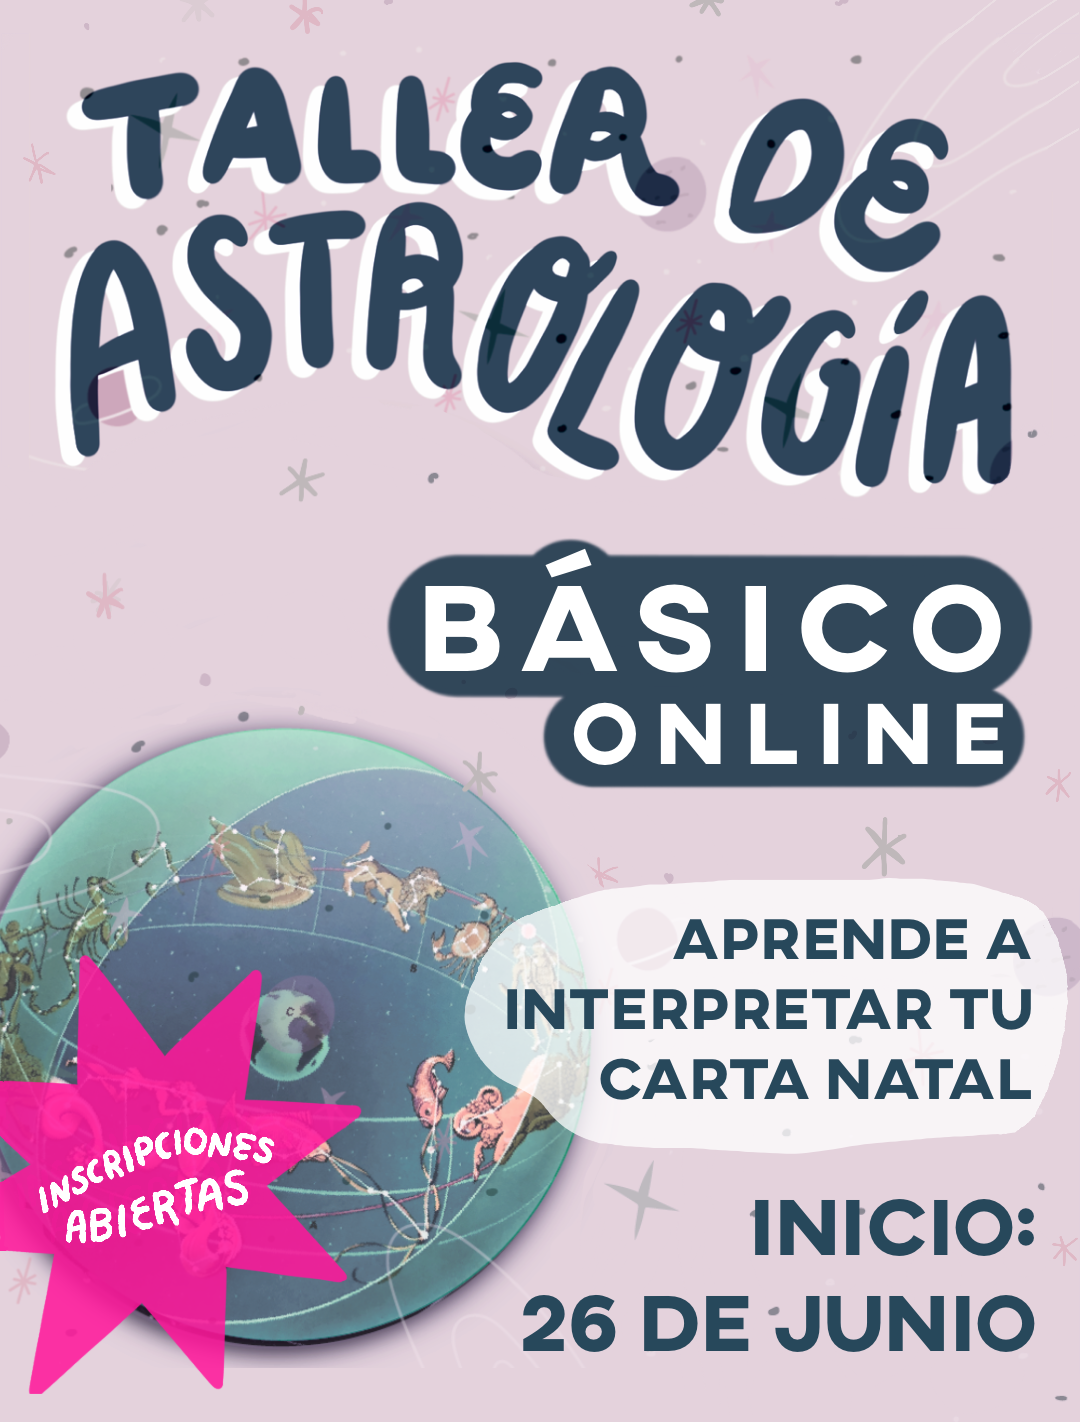 TALLER DE ASTROLOGÍA BÁSICO ONLINE - $180 DÓLARES